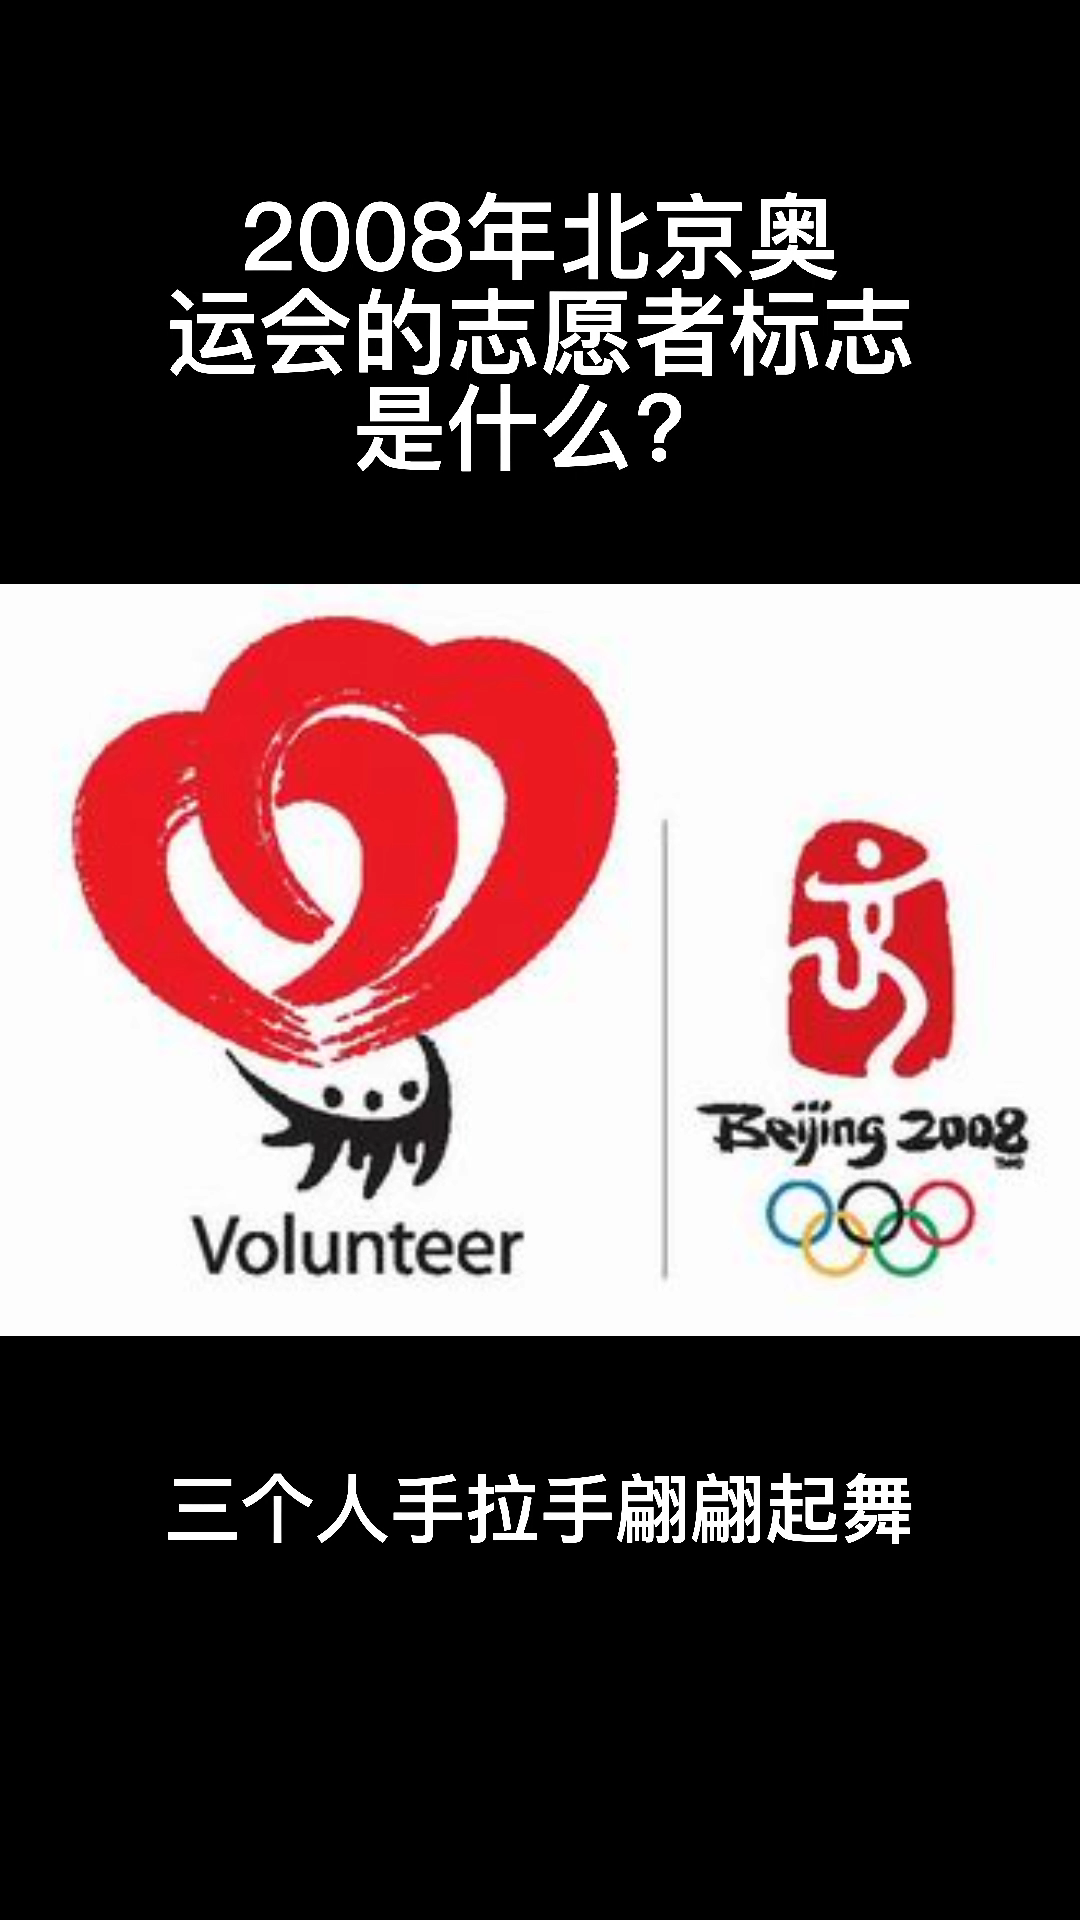 2008年北京奥运会的志愿者标志是什么?